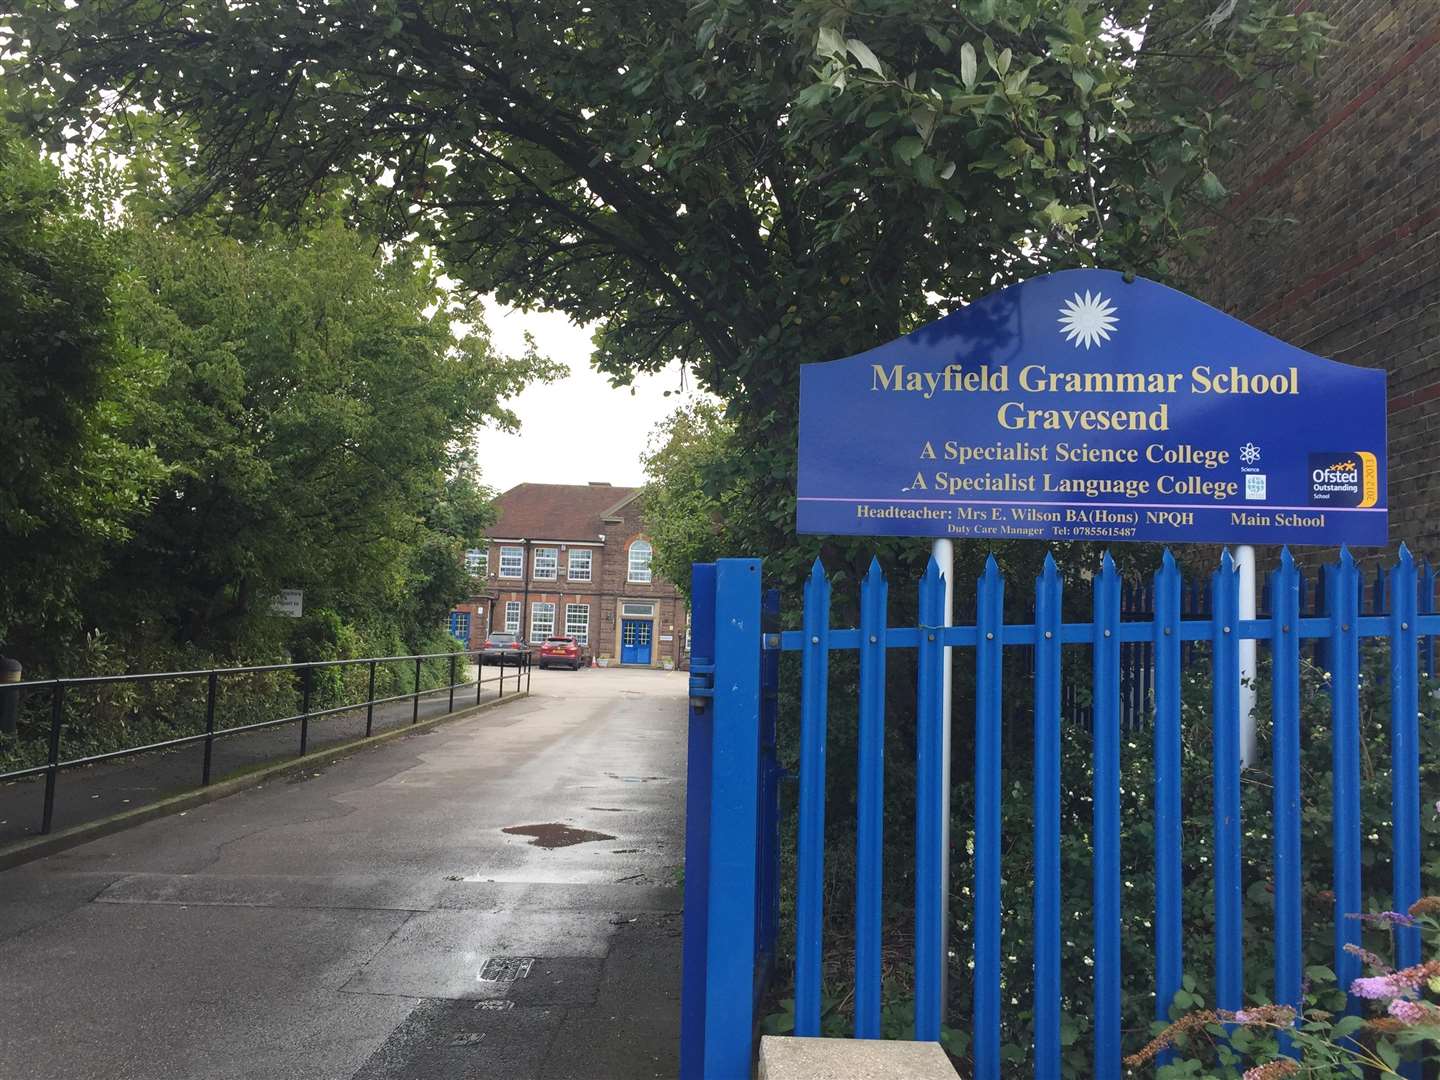 Mayfield Grammar School in Gravesend